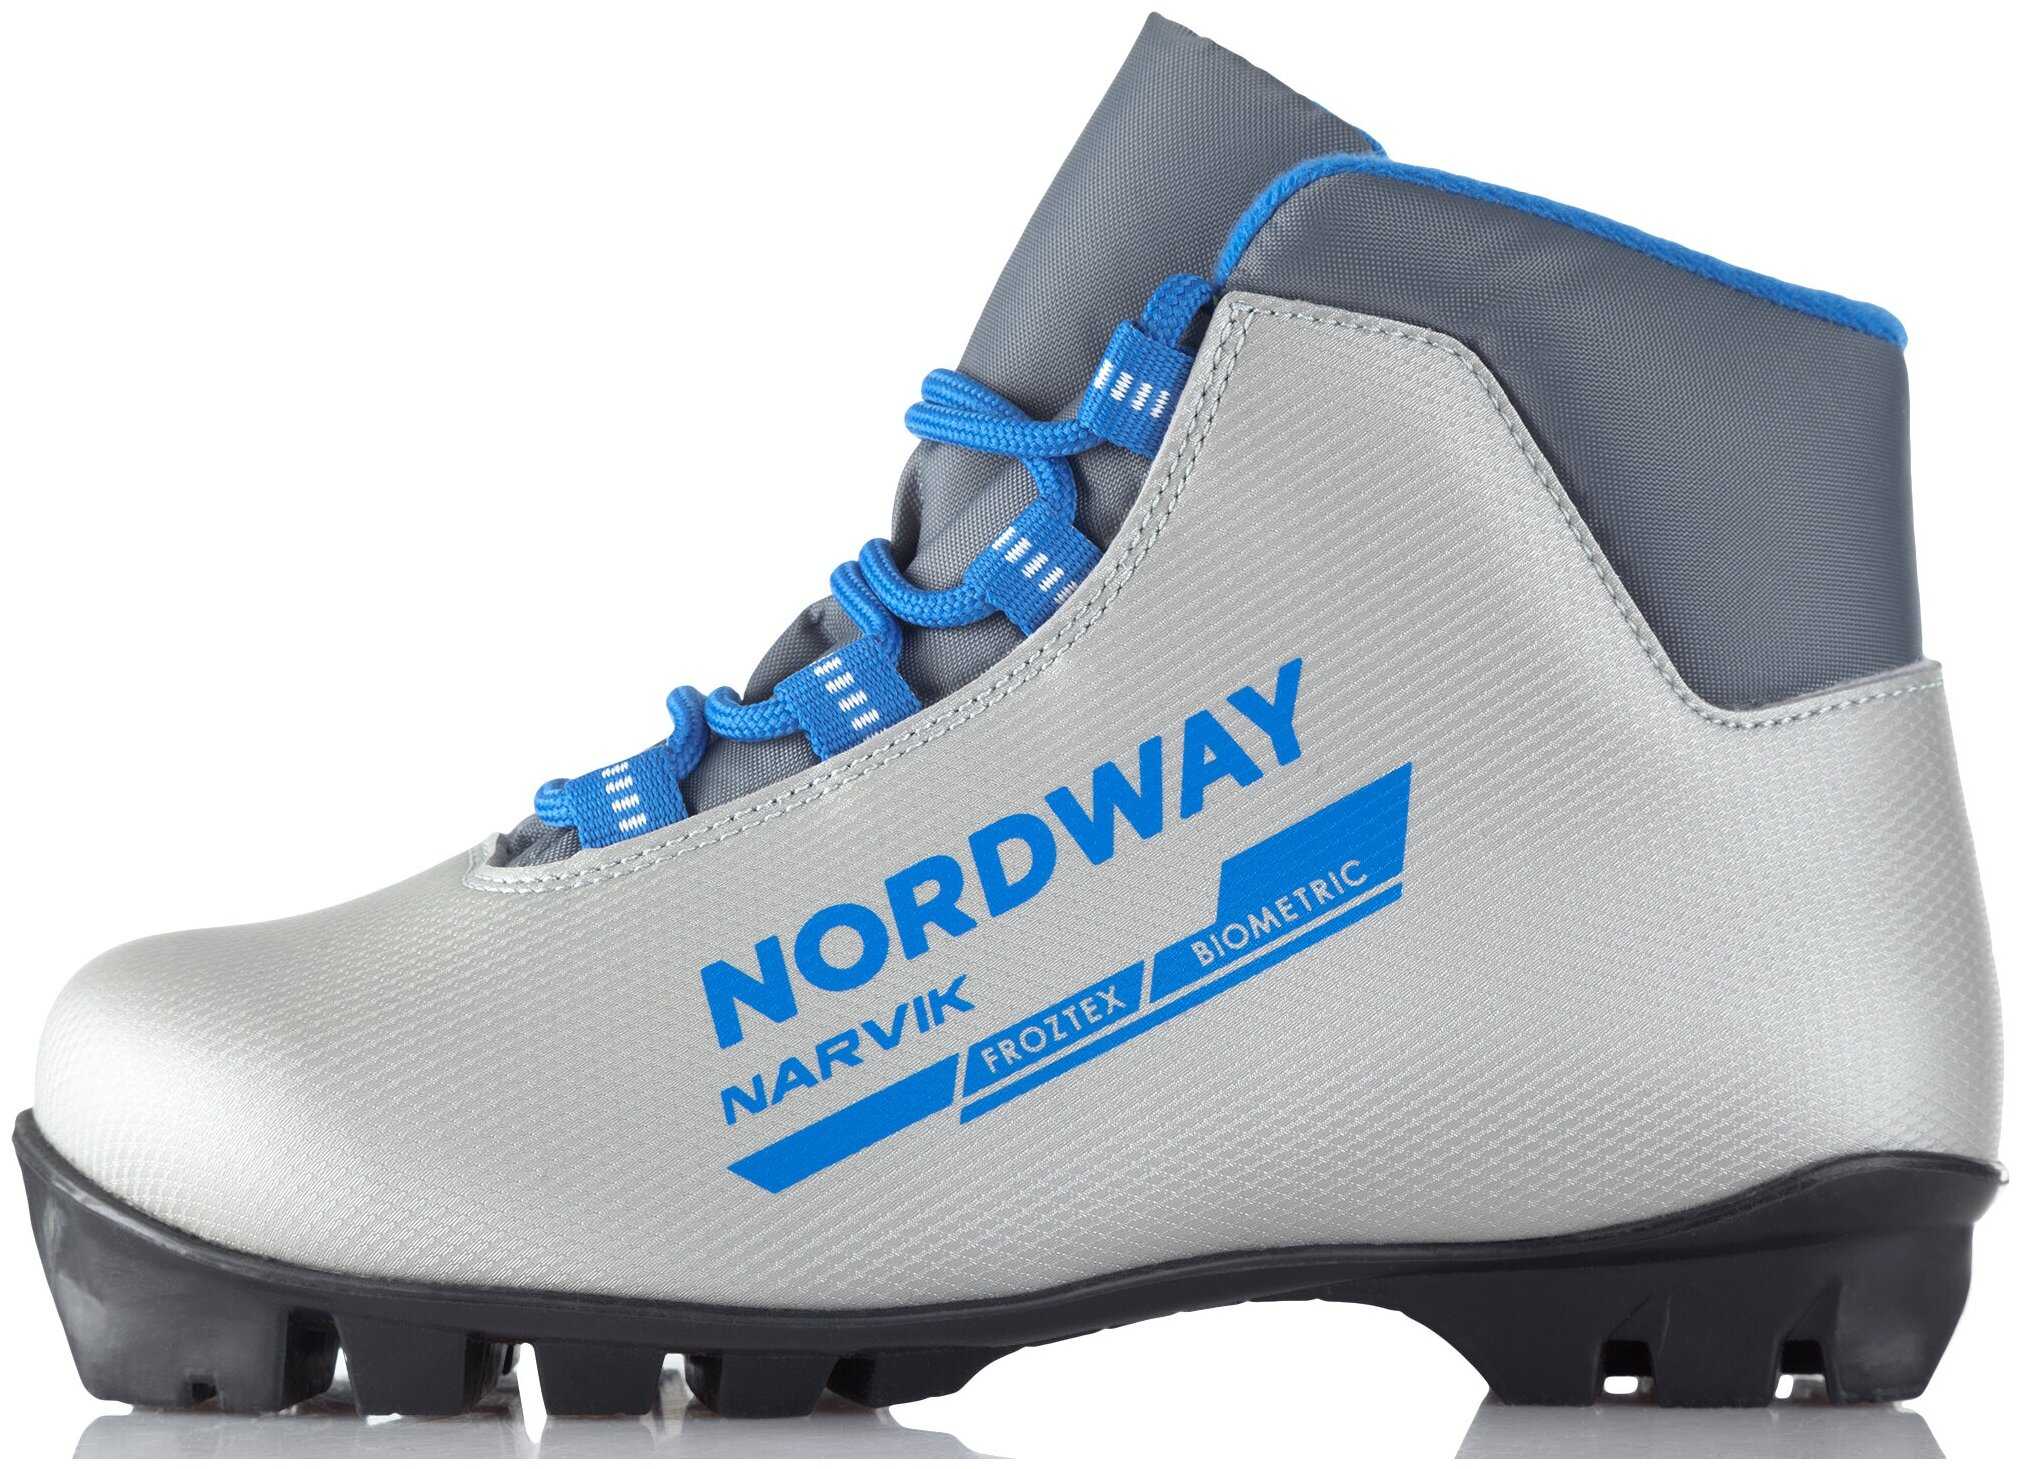 Лыжные ботинки Nordway – это оптимальное сочетание классического дизайна, новейших технологий и разумной цены Какие существуют отзывы о Нордвей Обзор моделей Skei, Bergen, Narvik, Rs skate, Tromse и других